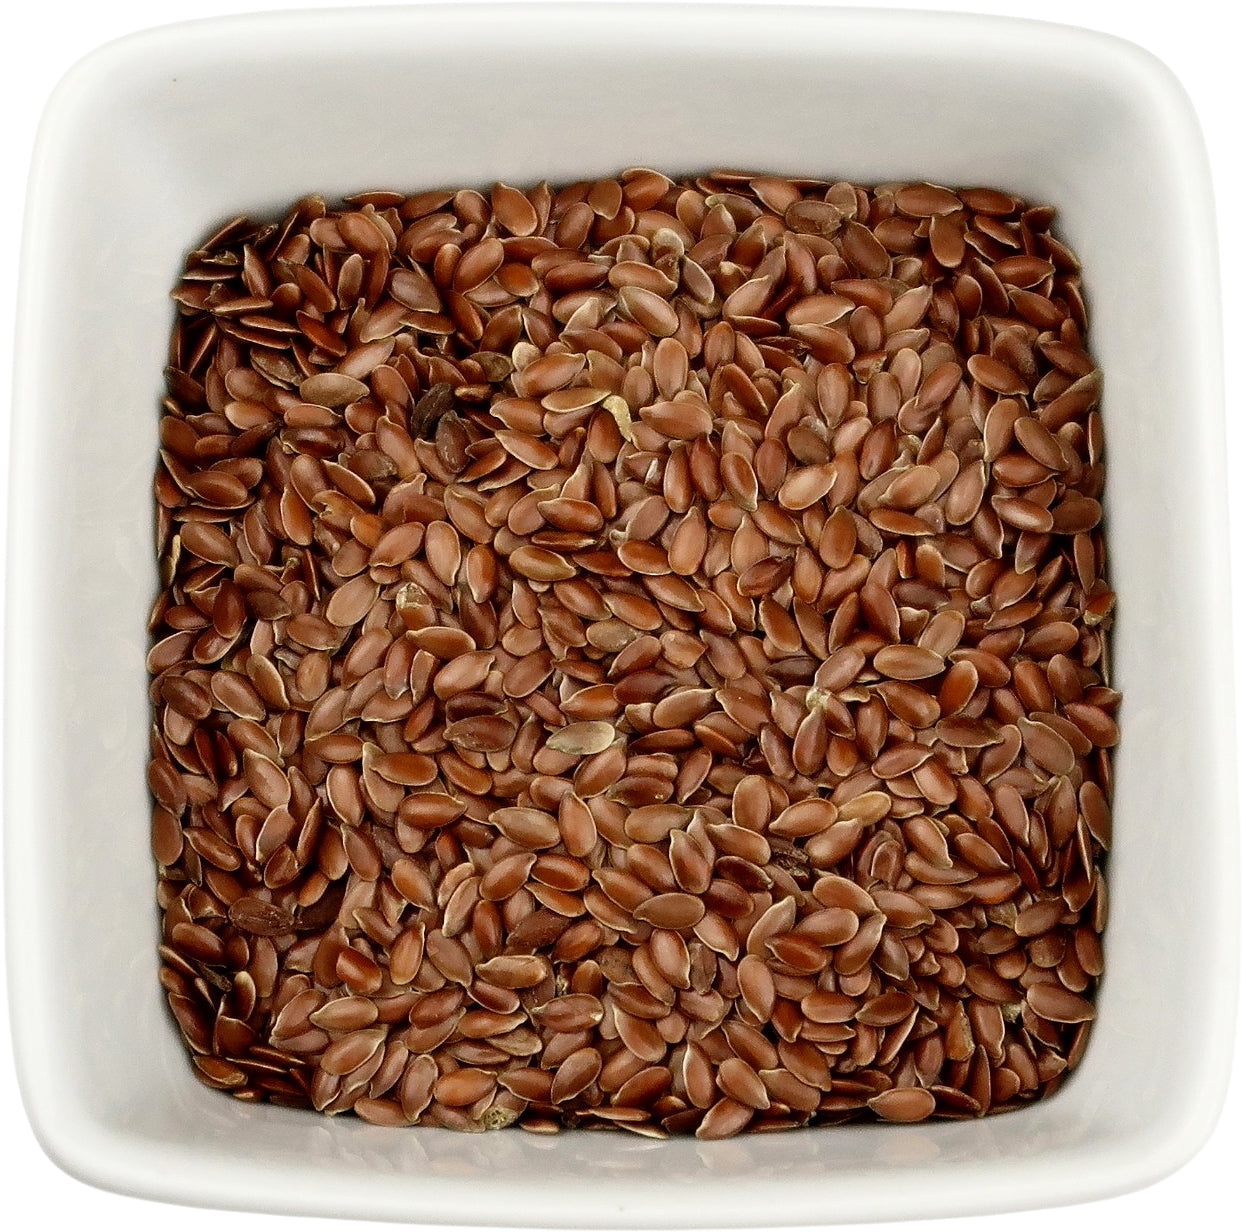 Organic Flax Seed, Whole (Linum usitatissimum)